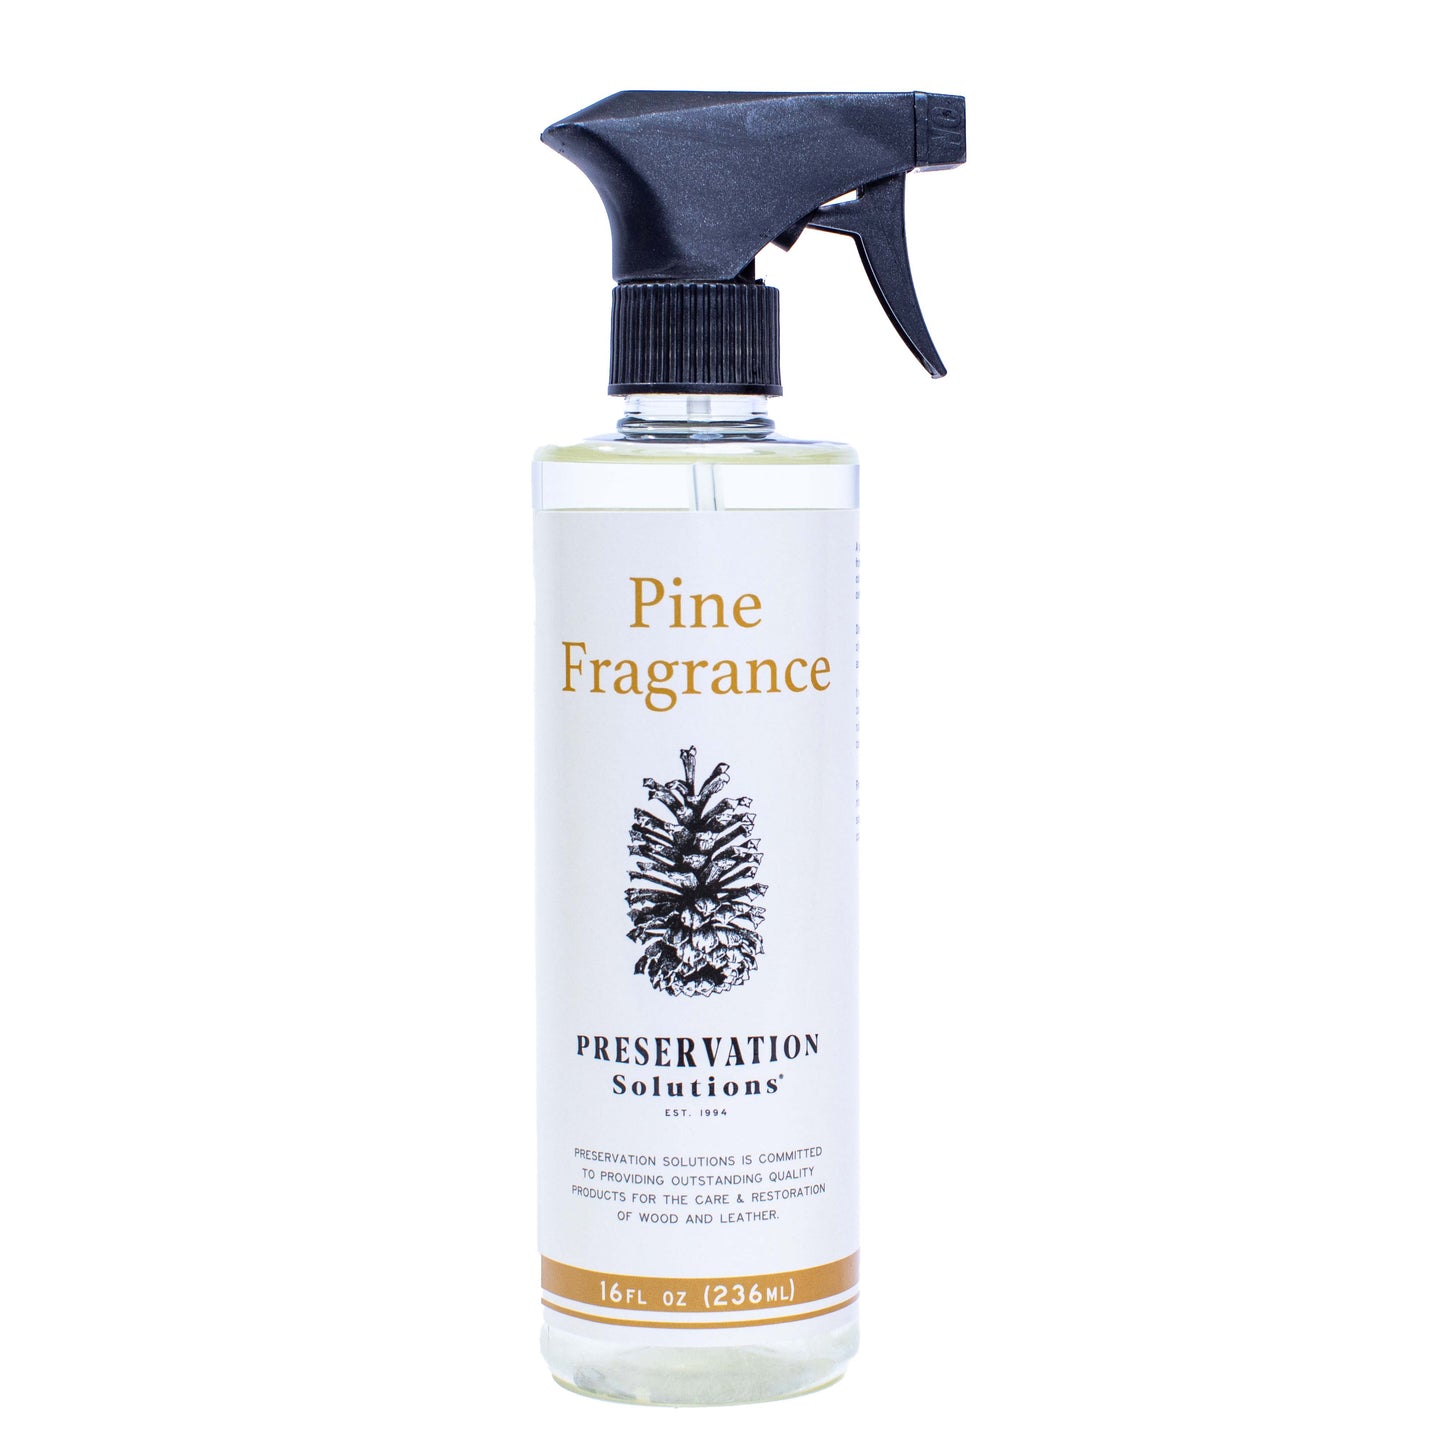 Natural Pine Fragrance: Pine & Balsam Fir